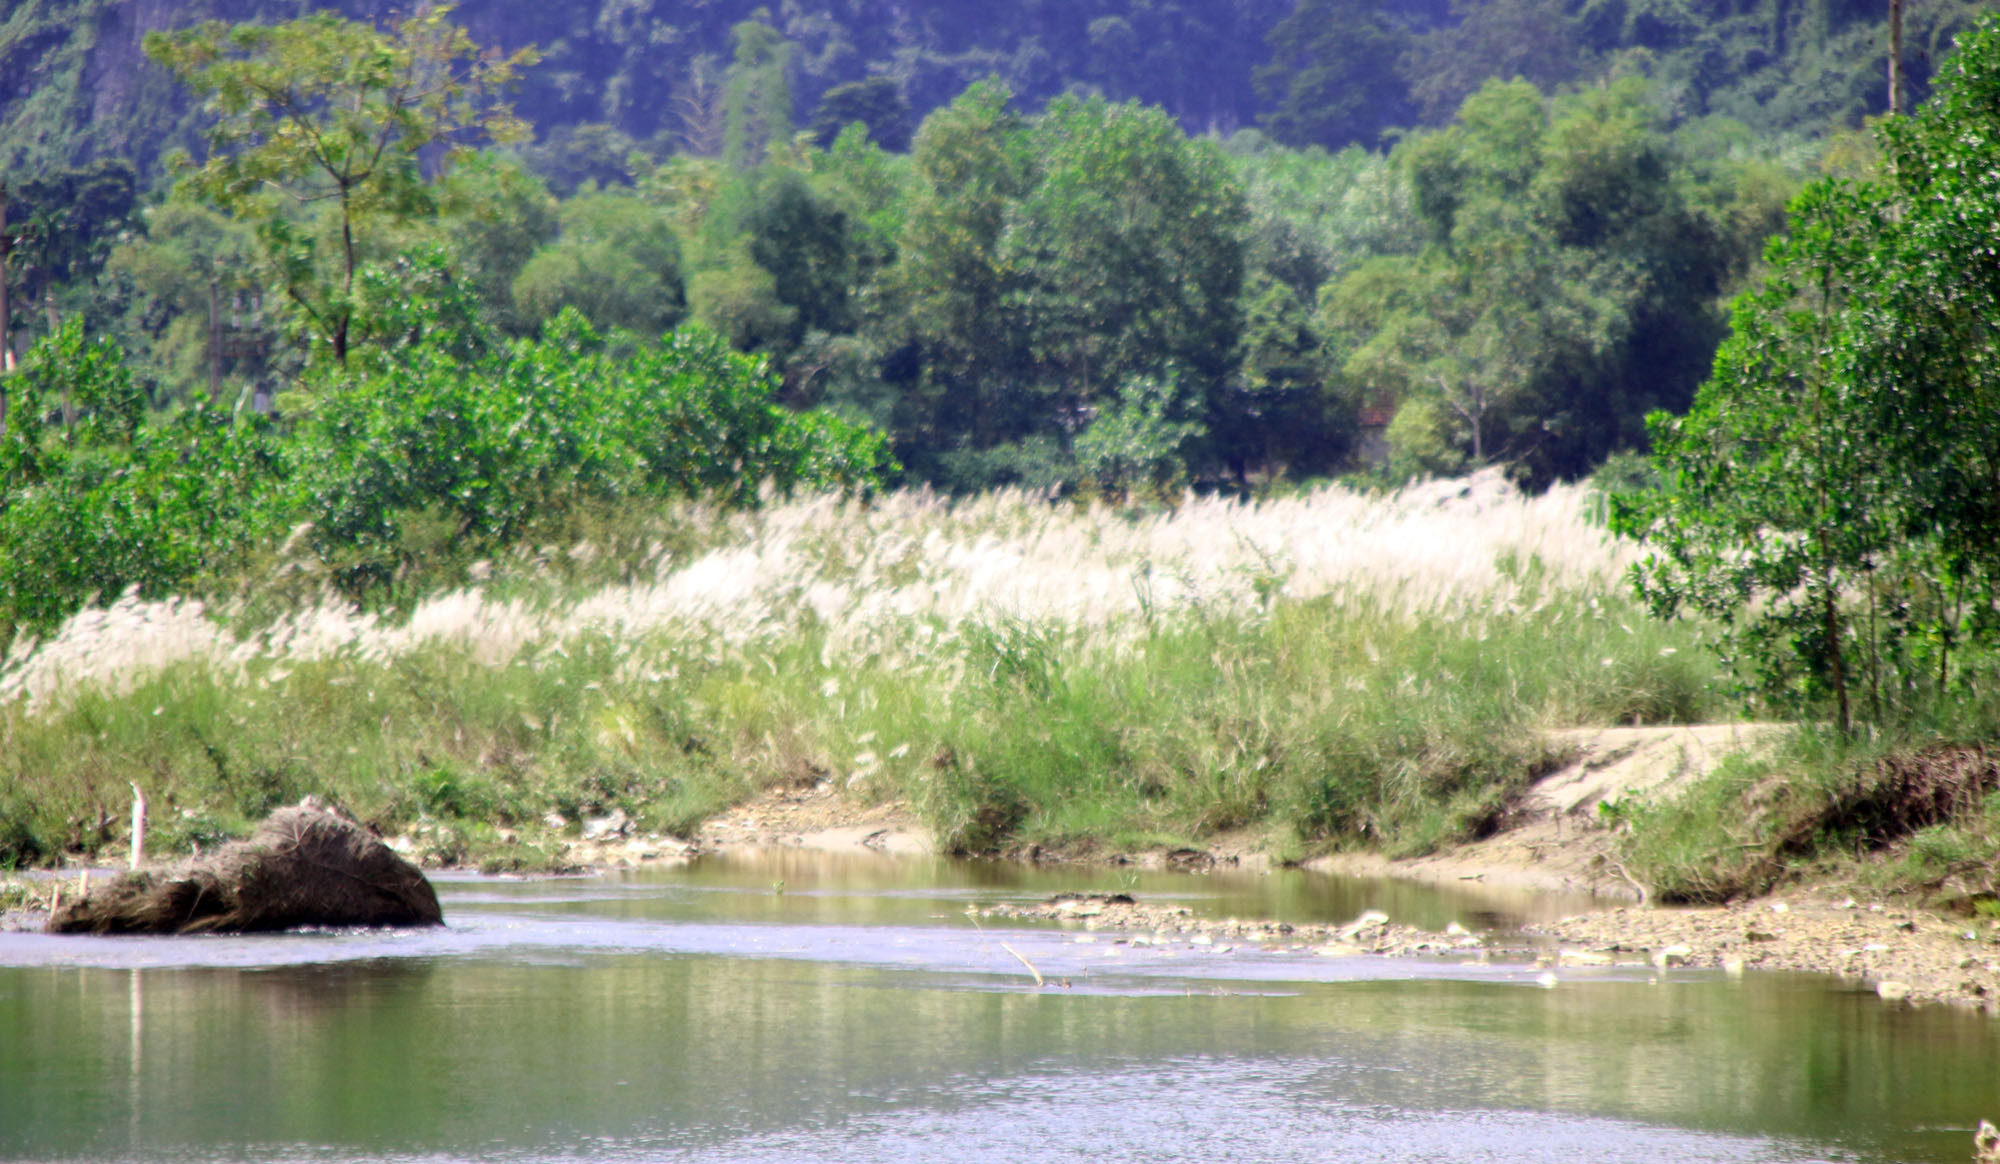 Hoa lau dọc suối Khe Hang xã Châu Cường (Quỳ Hợp), địa điểm cách trung tâm huyện chưa đầy 4km Ảnh : Vi - Thủy